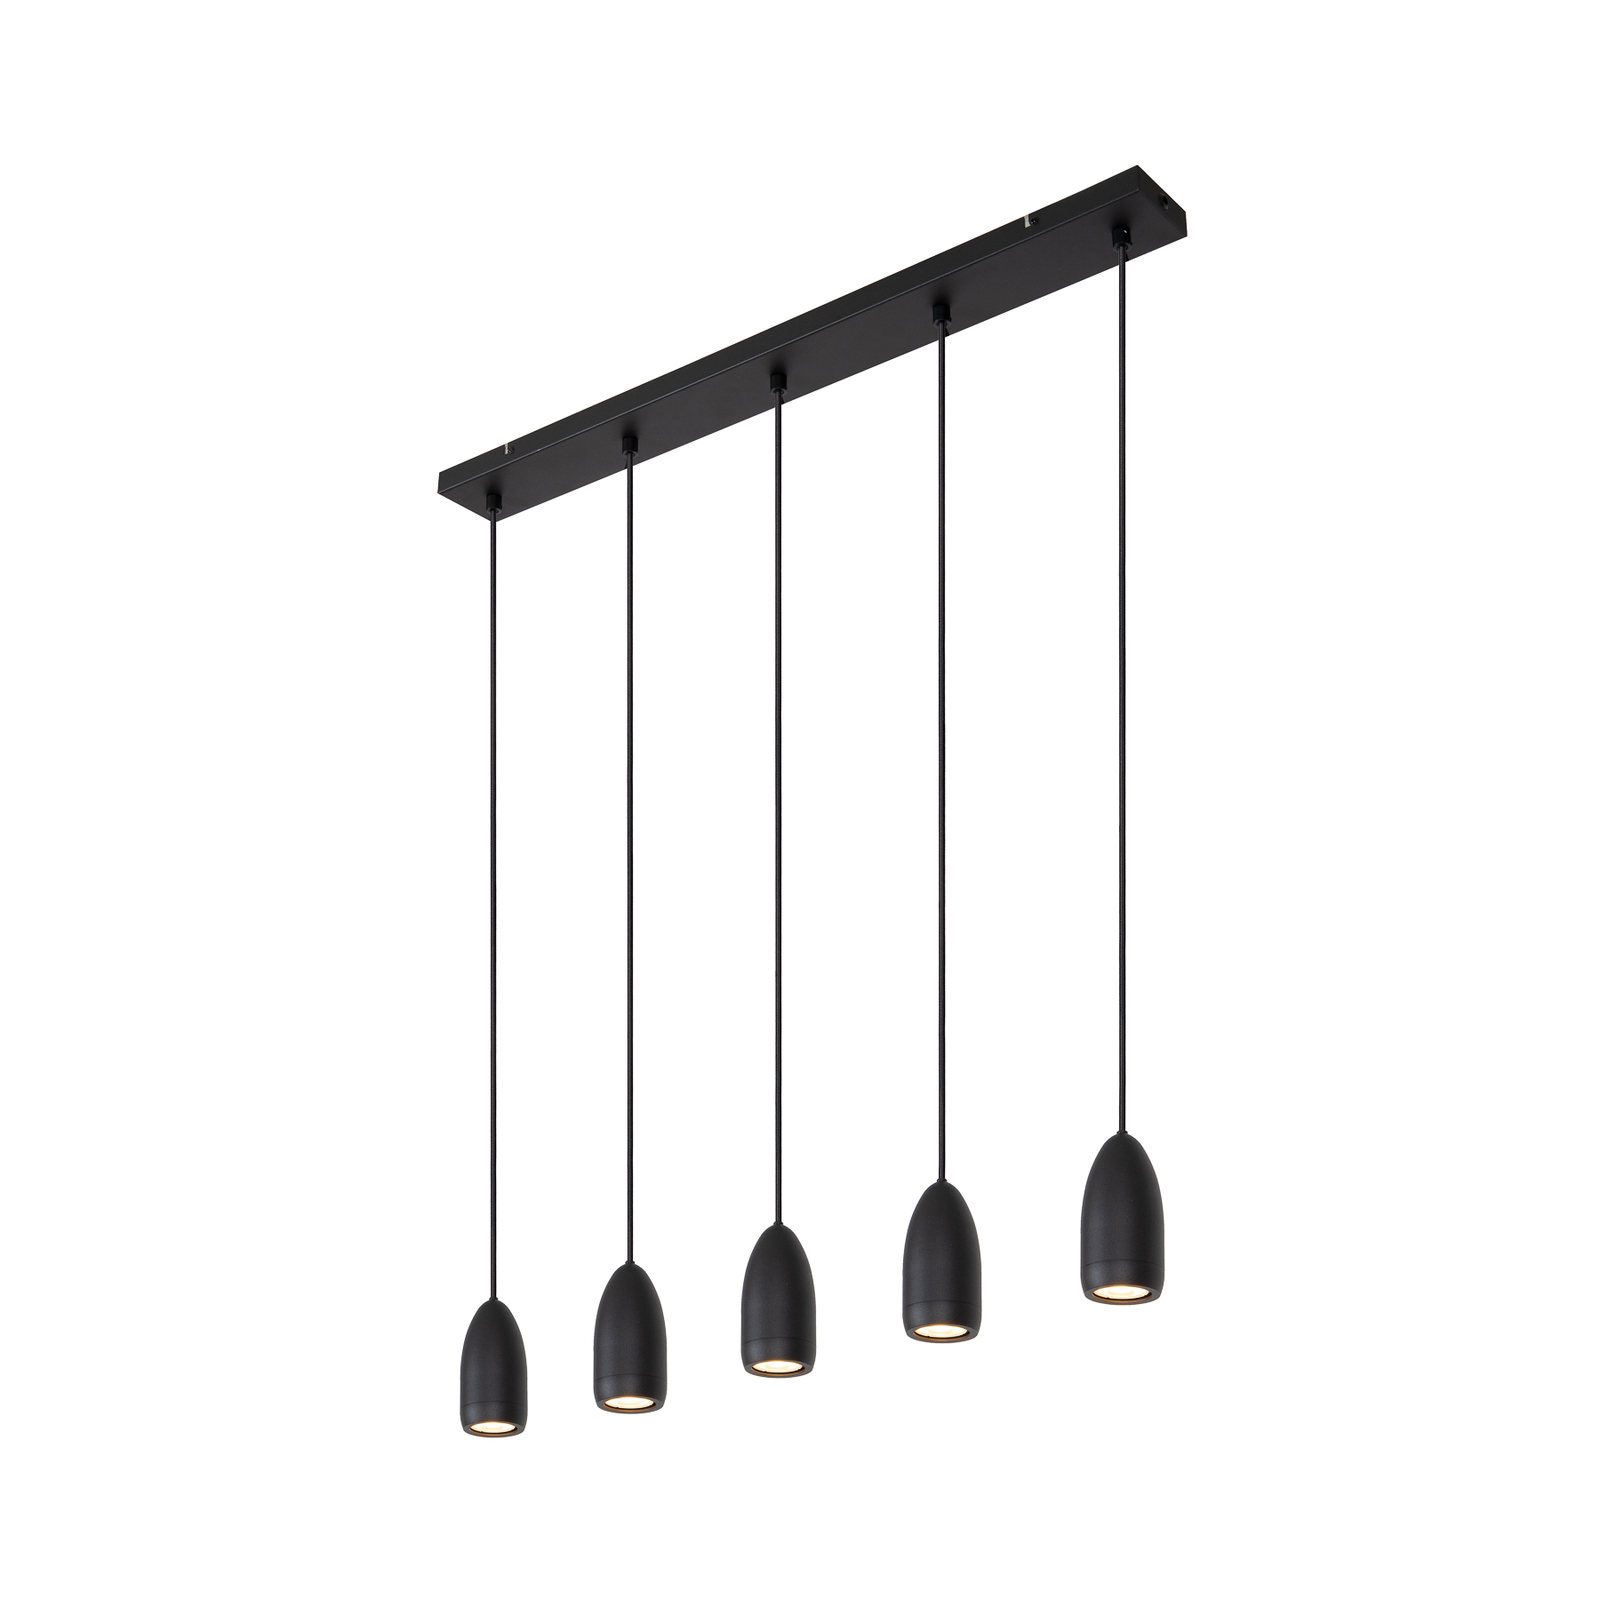 Hanglamp Evora, 5-lamps, balken, zwart